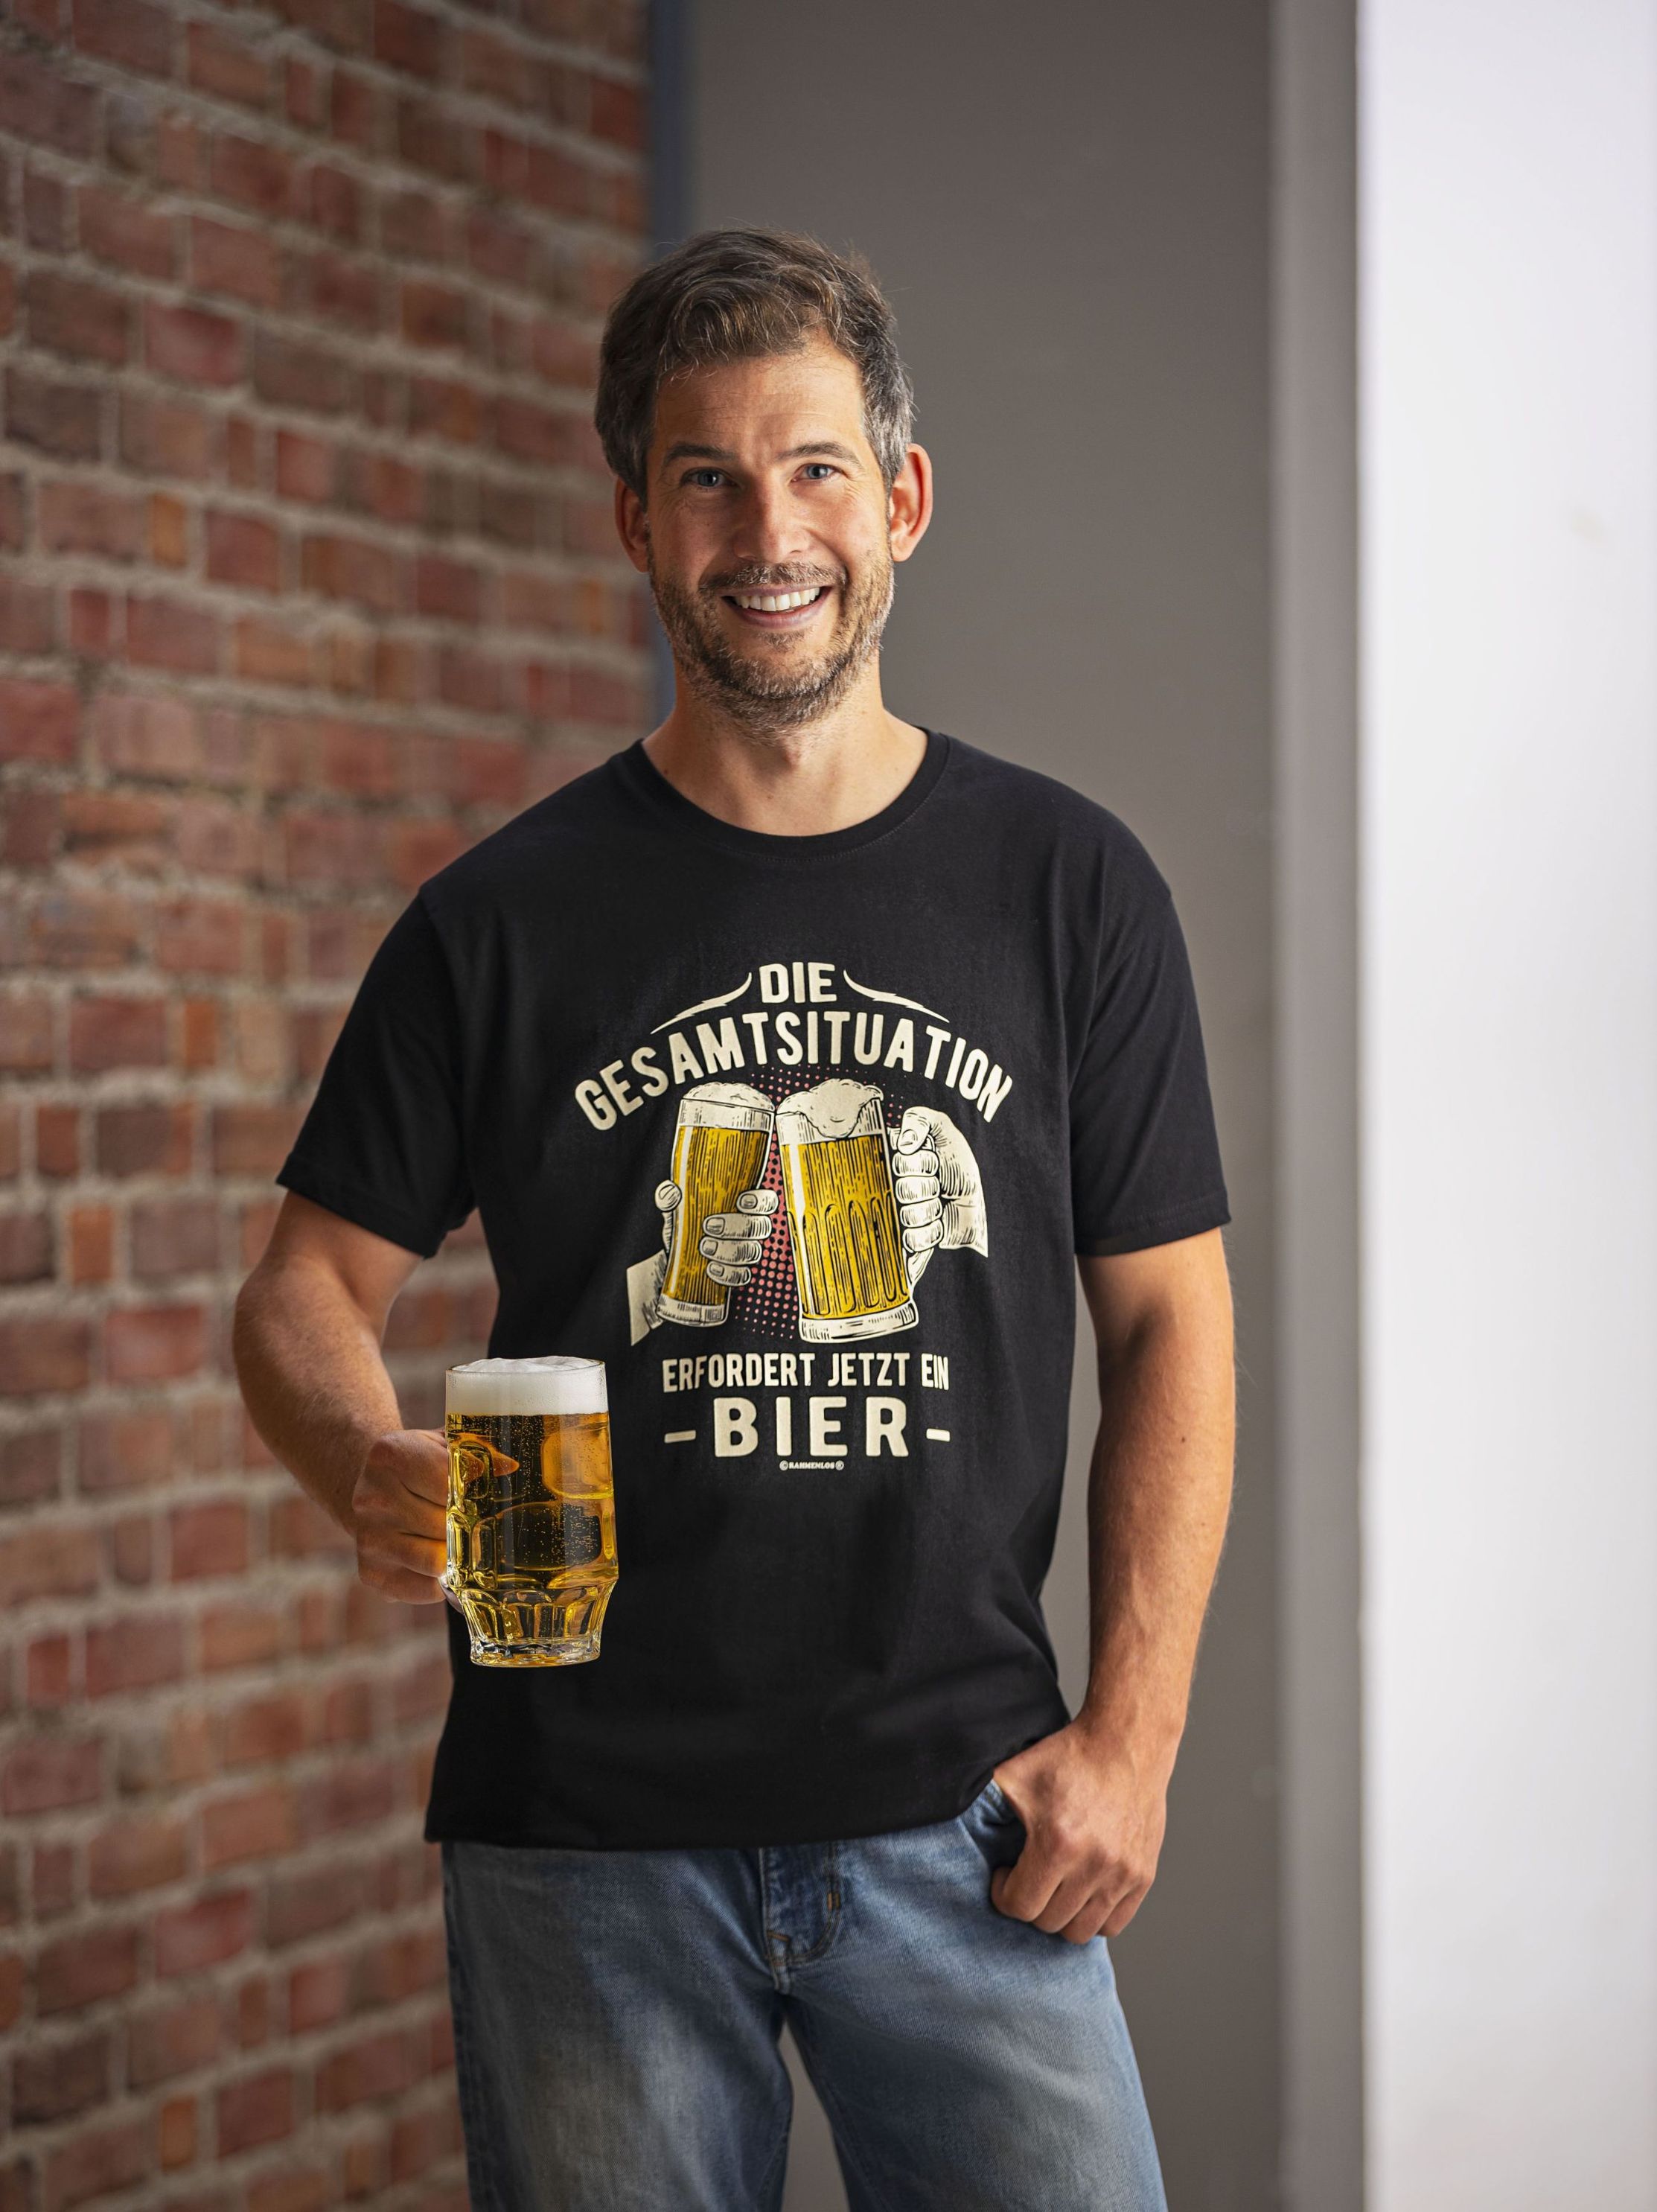 T-Shirt Die Gesamtsituation erfordert jetzt ein Bier Größe: L | Weltbild.de